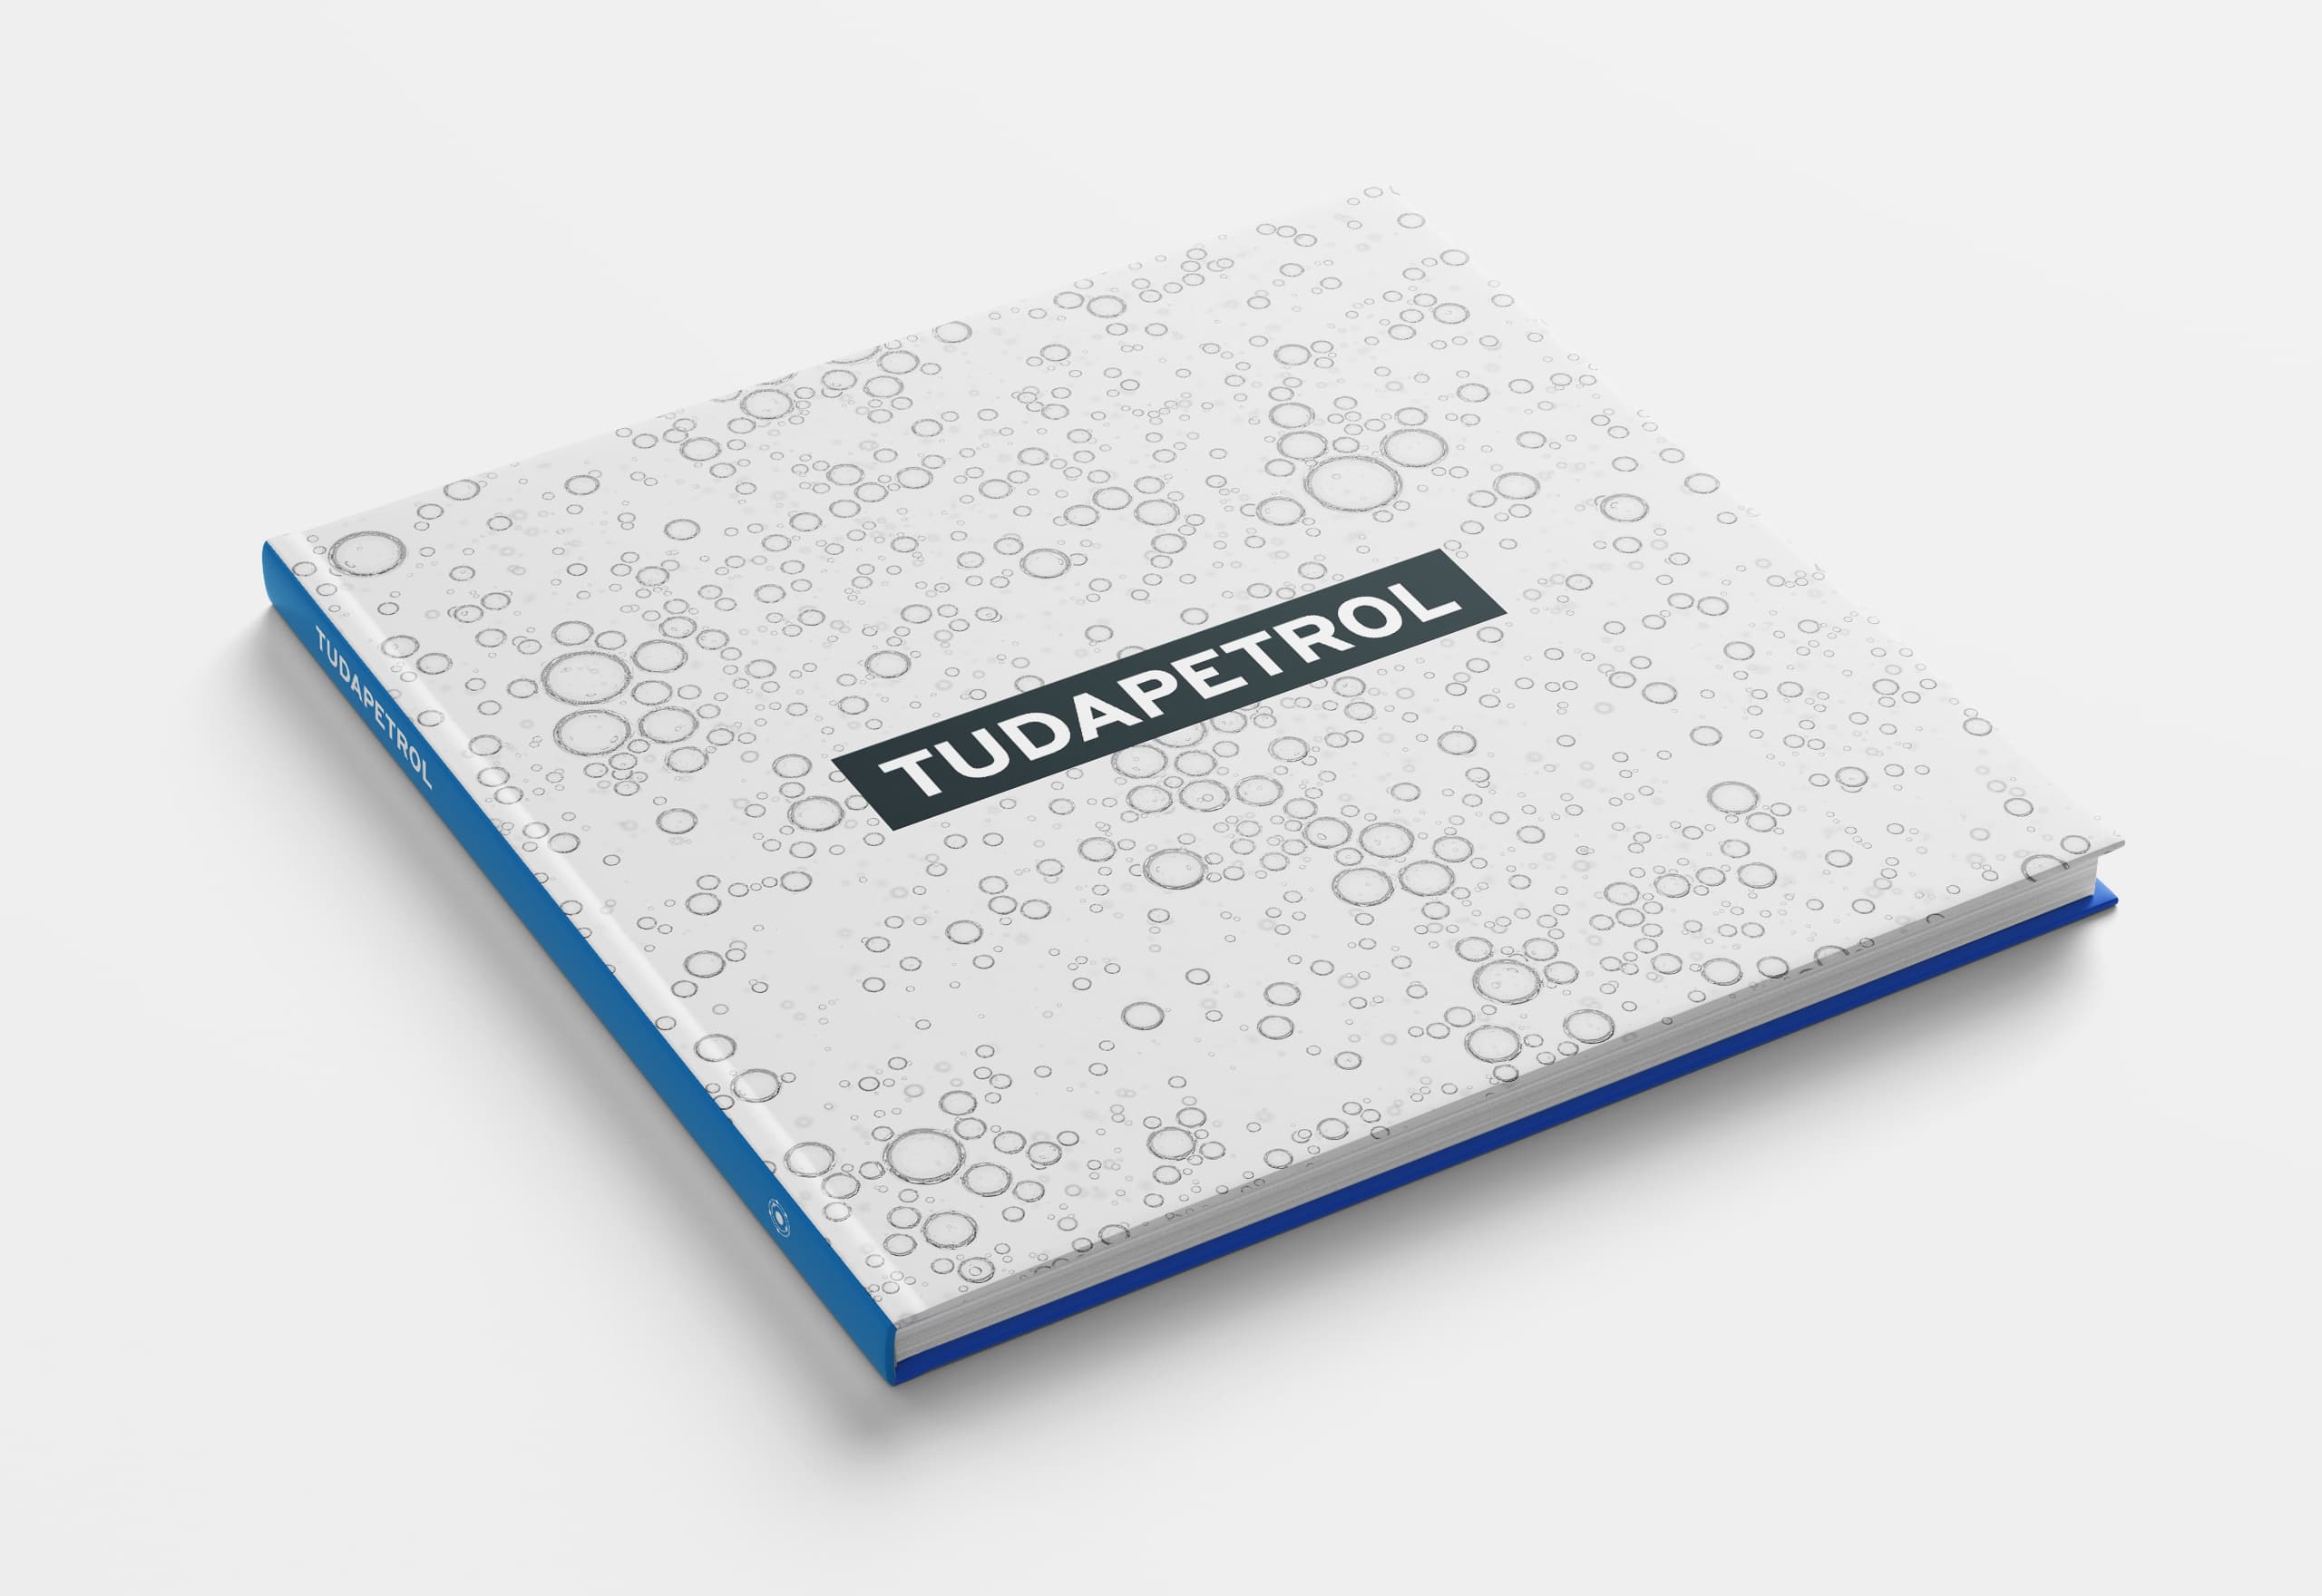 Buchdesign Tudapetrol